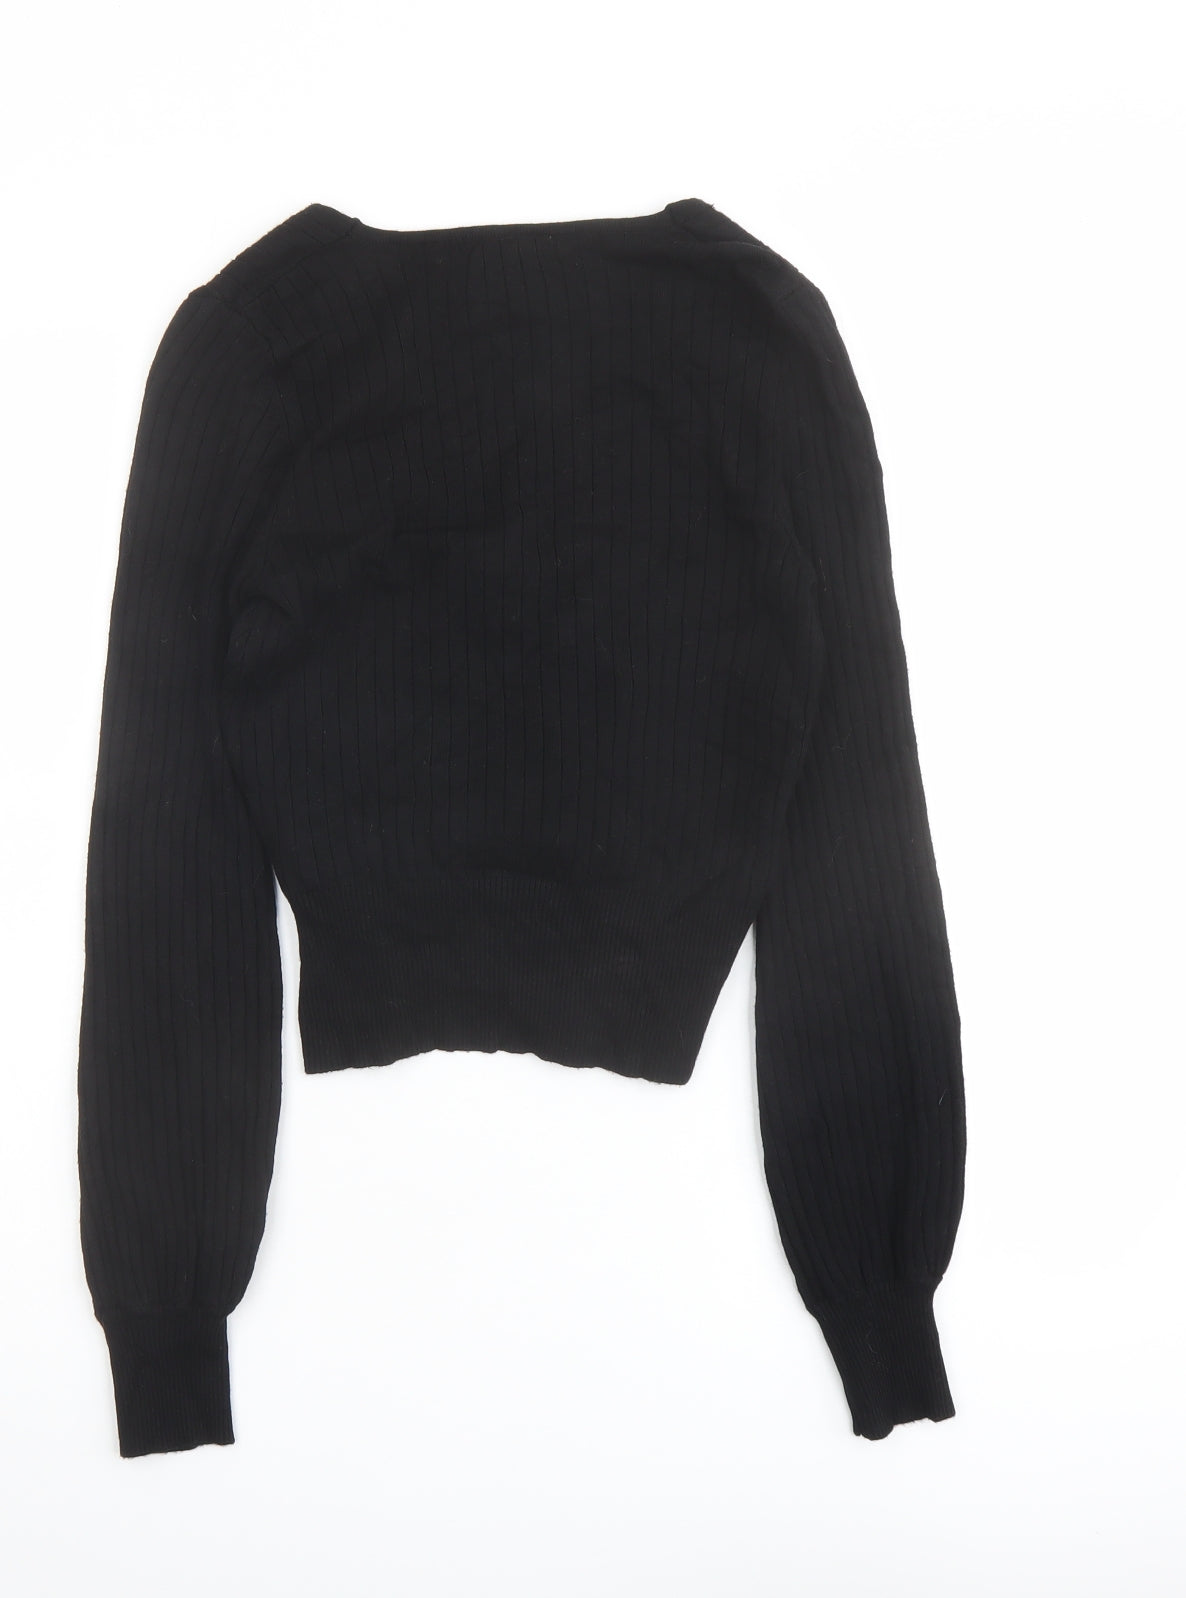 Urban Bliss Womens Black V-Neck Viscose Pullover Jumper Size 12